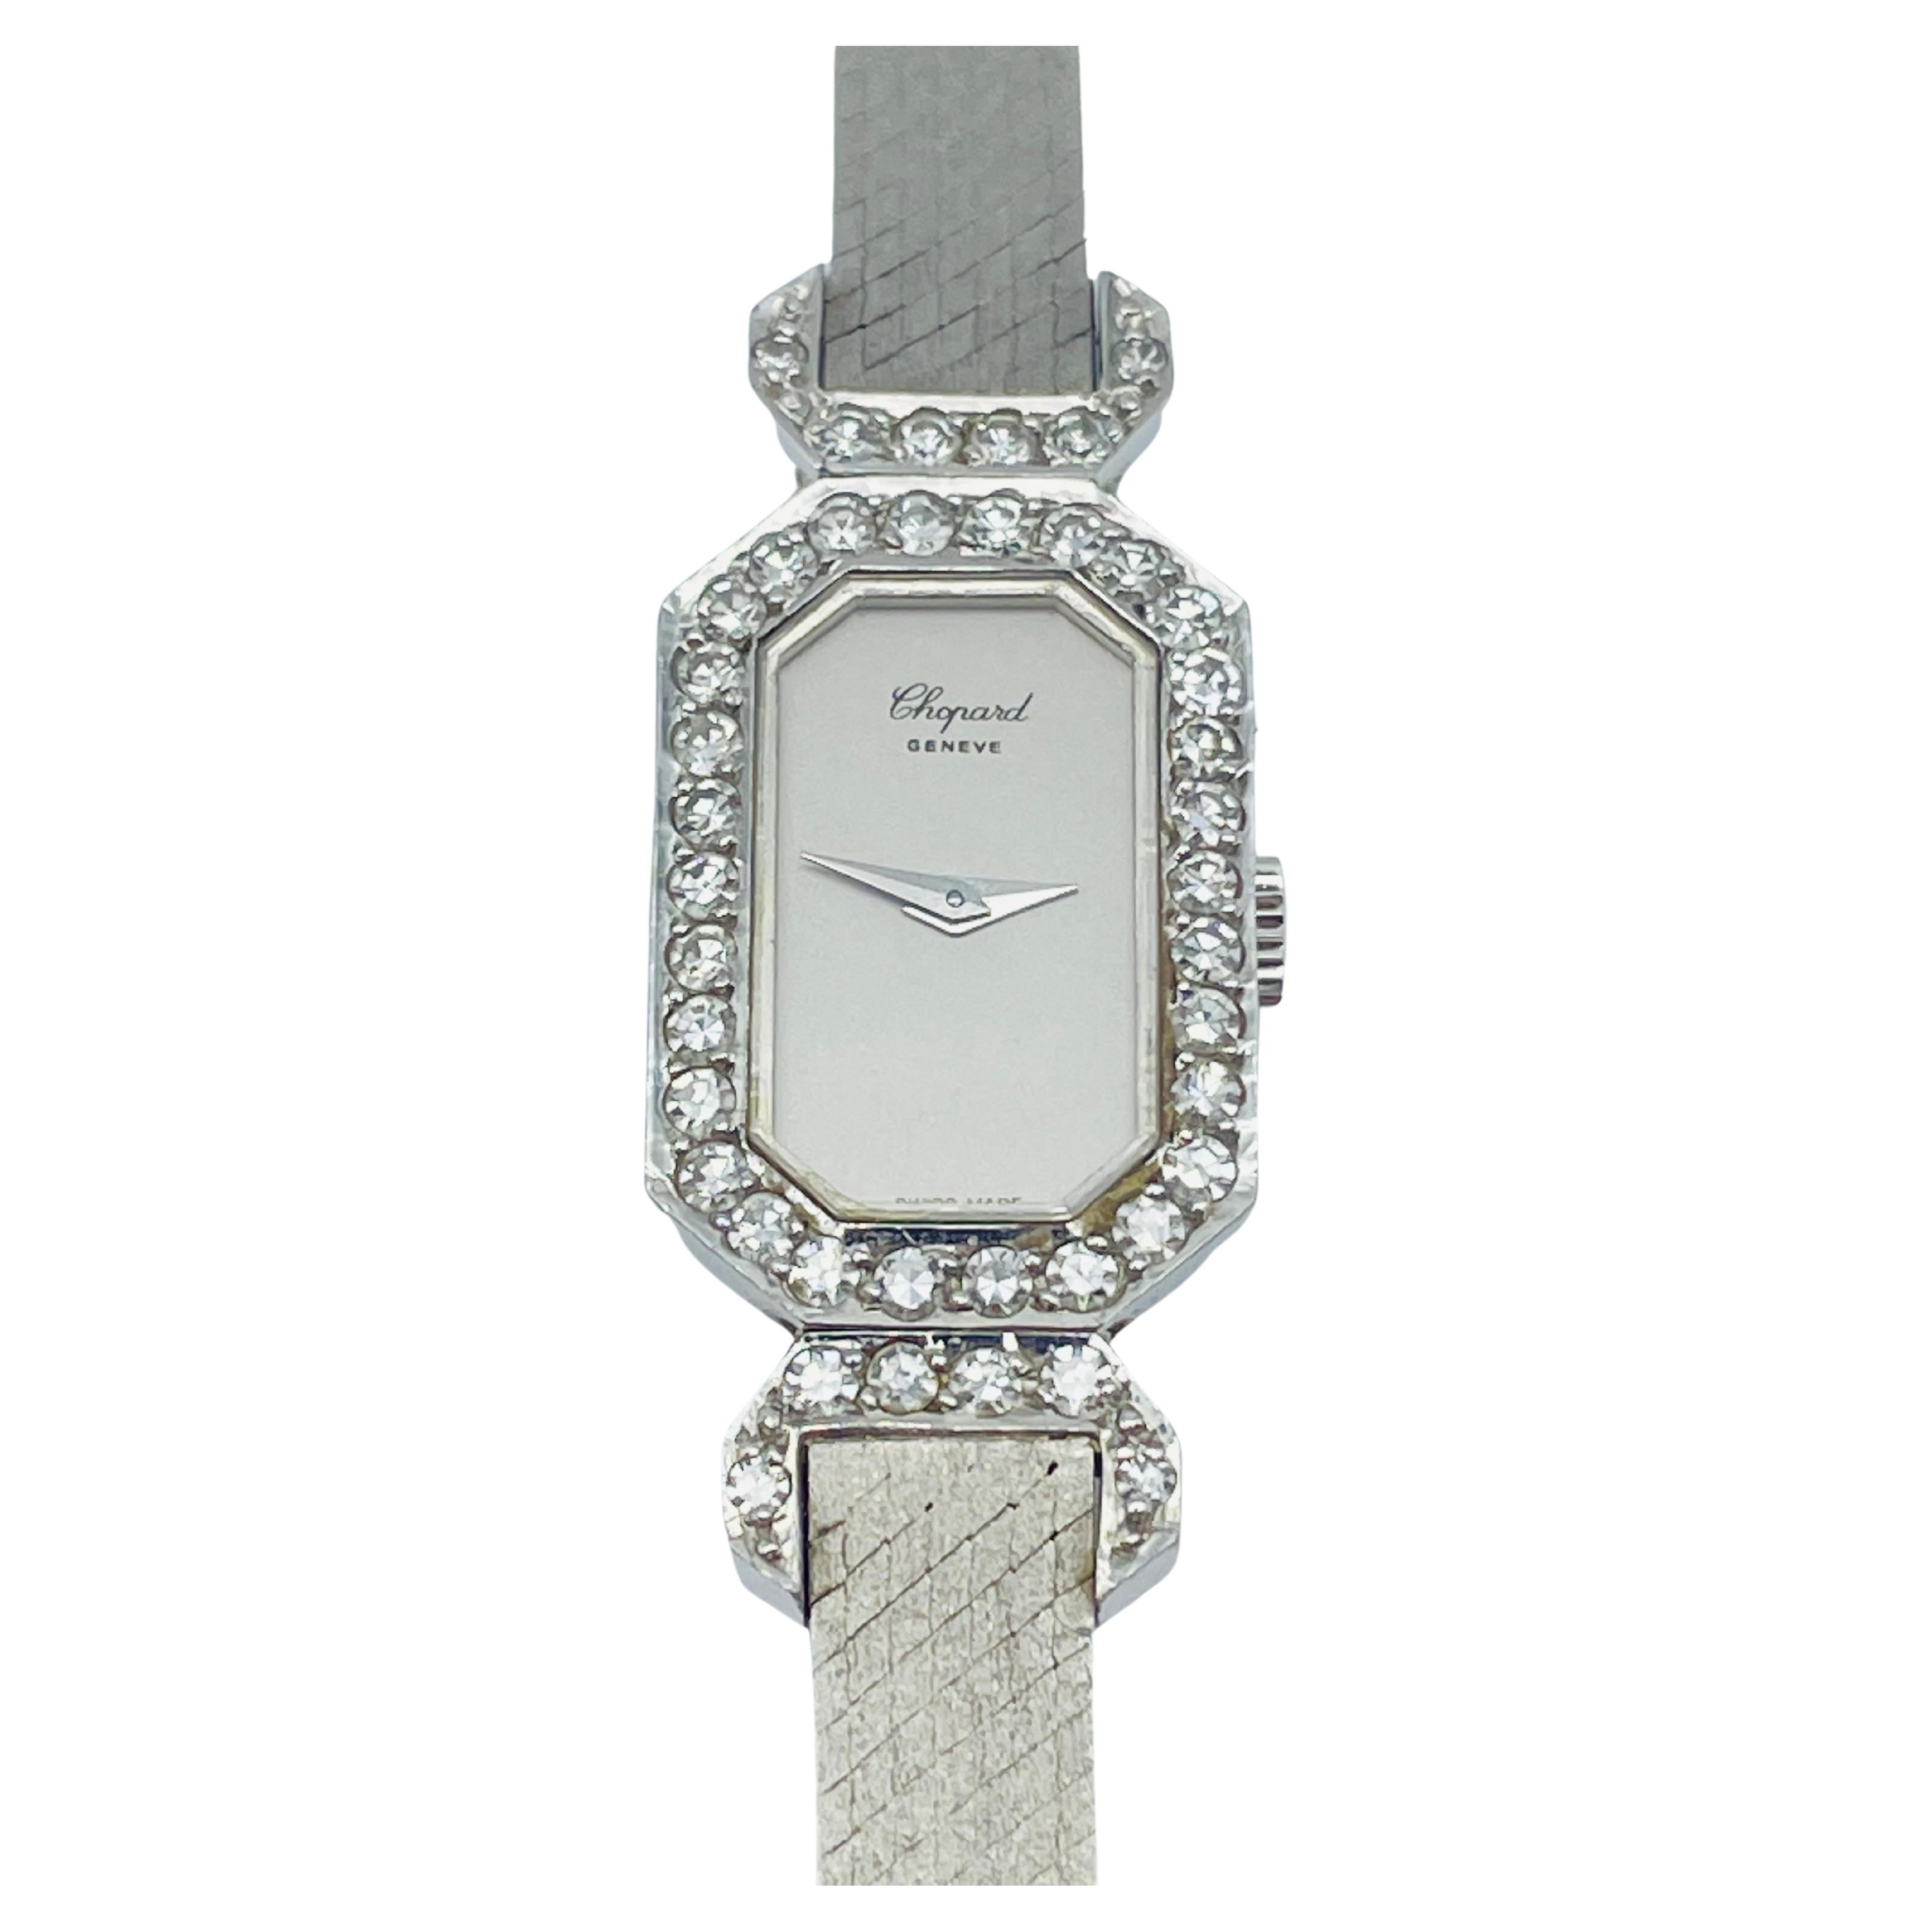 Chopard Montre pour femme vintage Geneve en or blanc 18 carats avec diamants